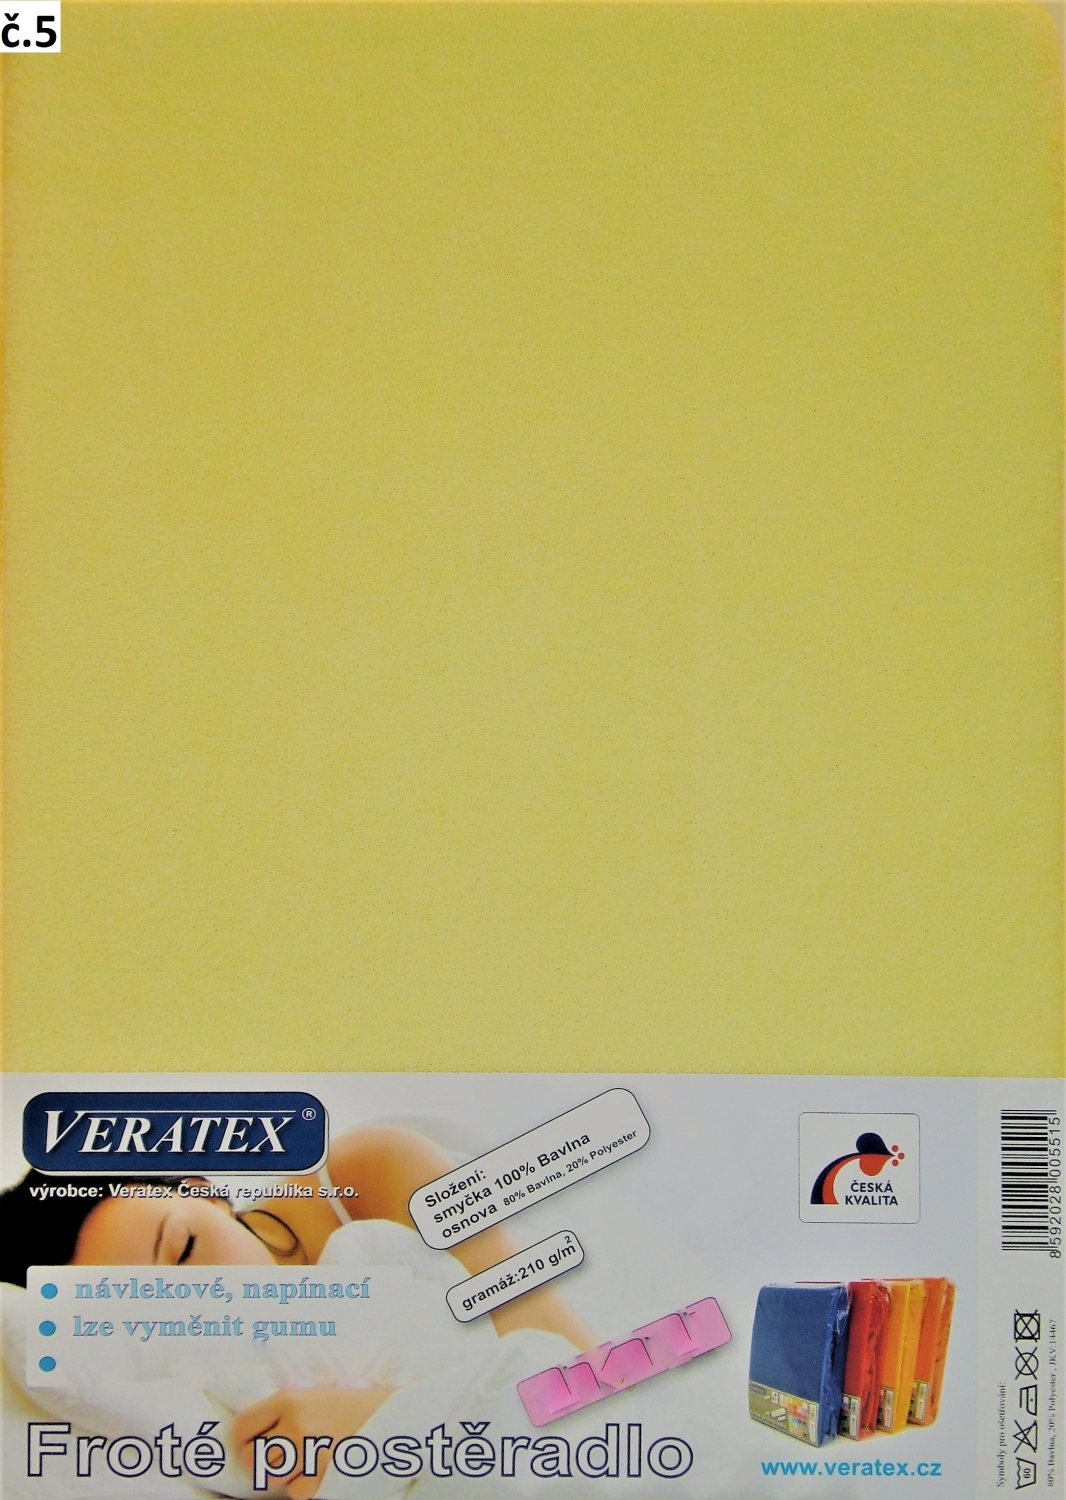 Veratex Froté prostěradlo jednolůžko 90x200x40cm (č. 5-sv.žluté)